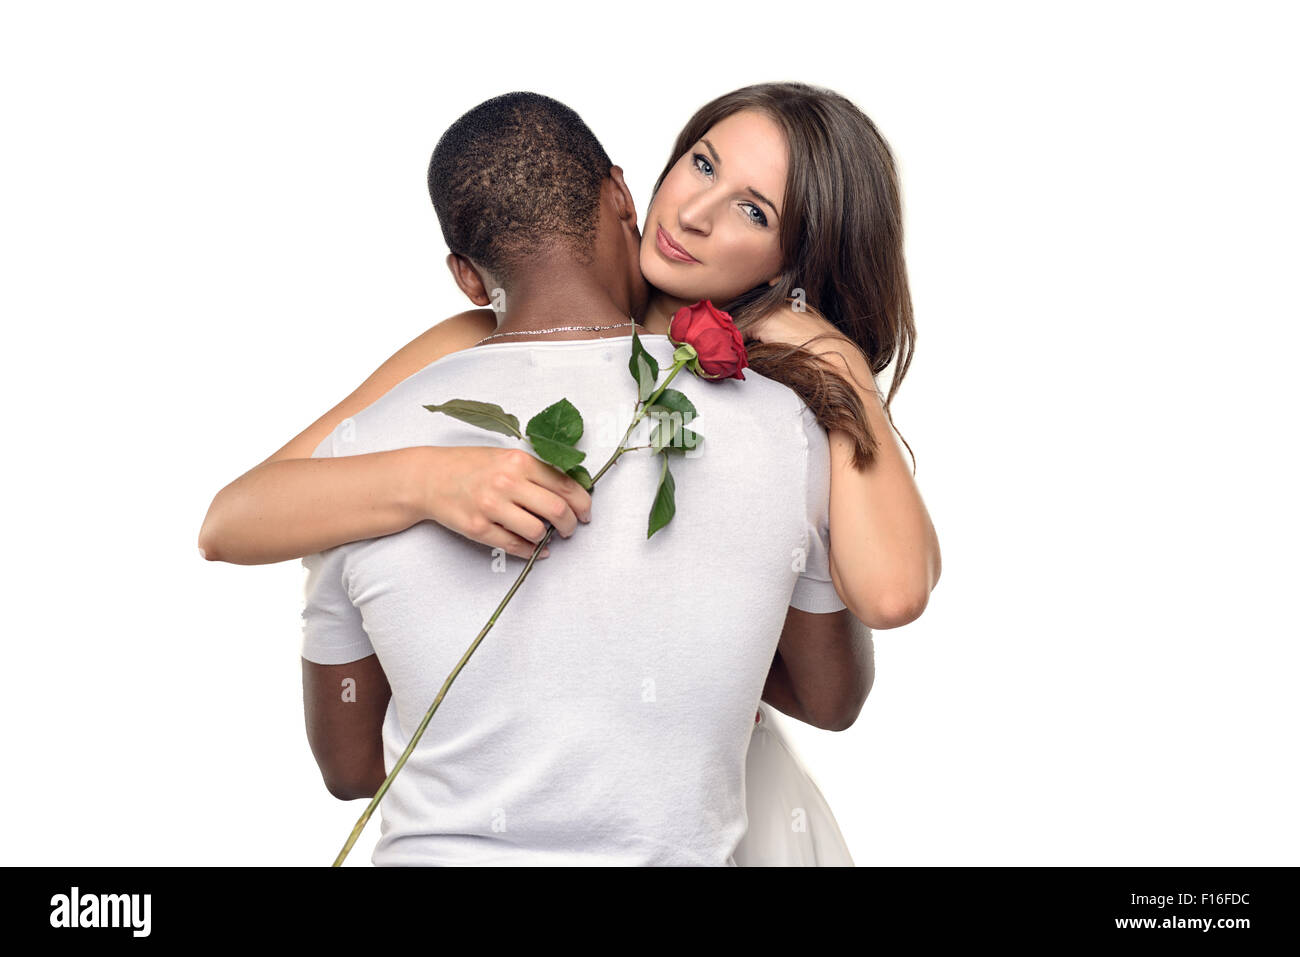 Sentimentale junge Frau umarmt ihr Freund oder geliebten, wie sie lächelt zärtlich nach unten eine einzelne rote rose er gerade h gegeben hat Stockfoto